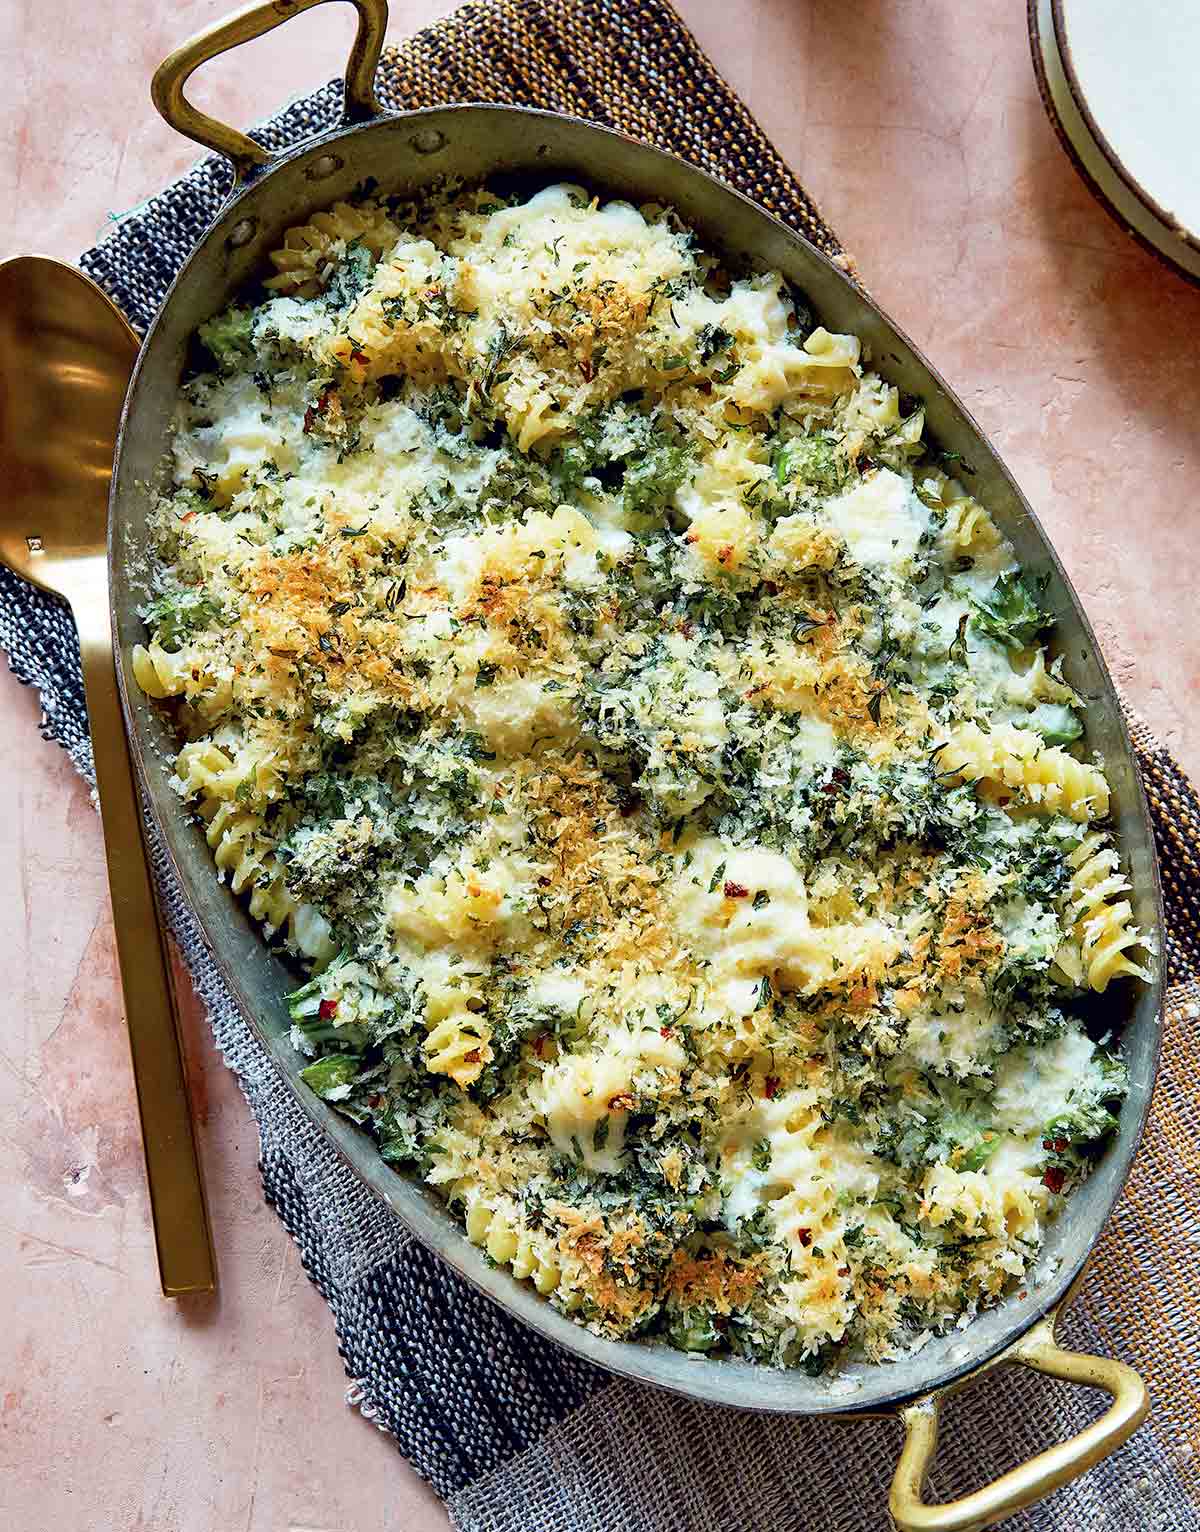 Bakad ostliknande pasta med broccoli i en stor gryta av metall, med serveringssked och servett.